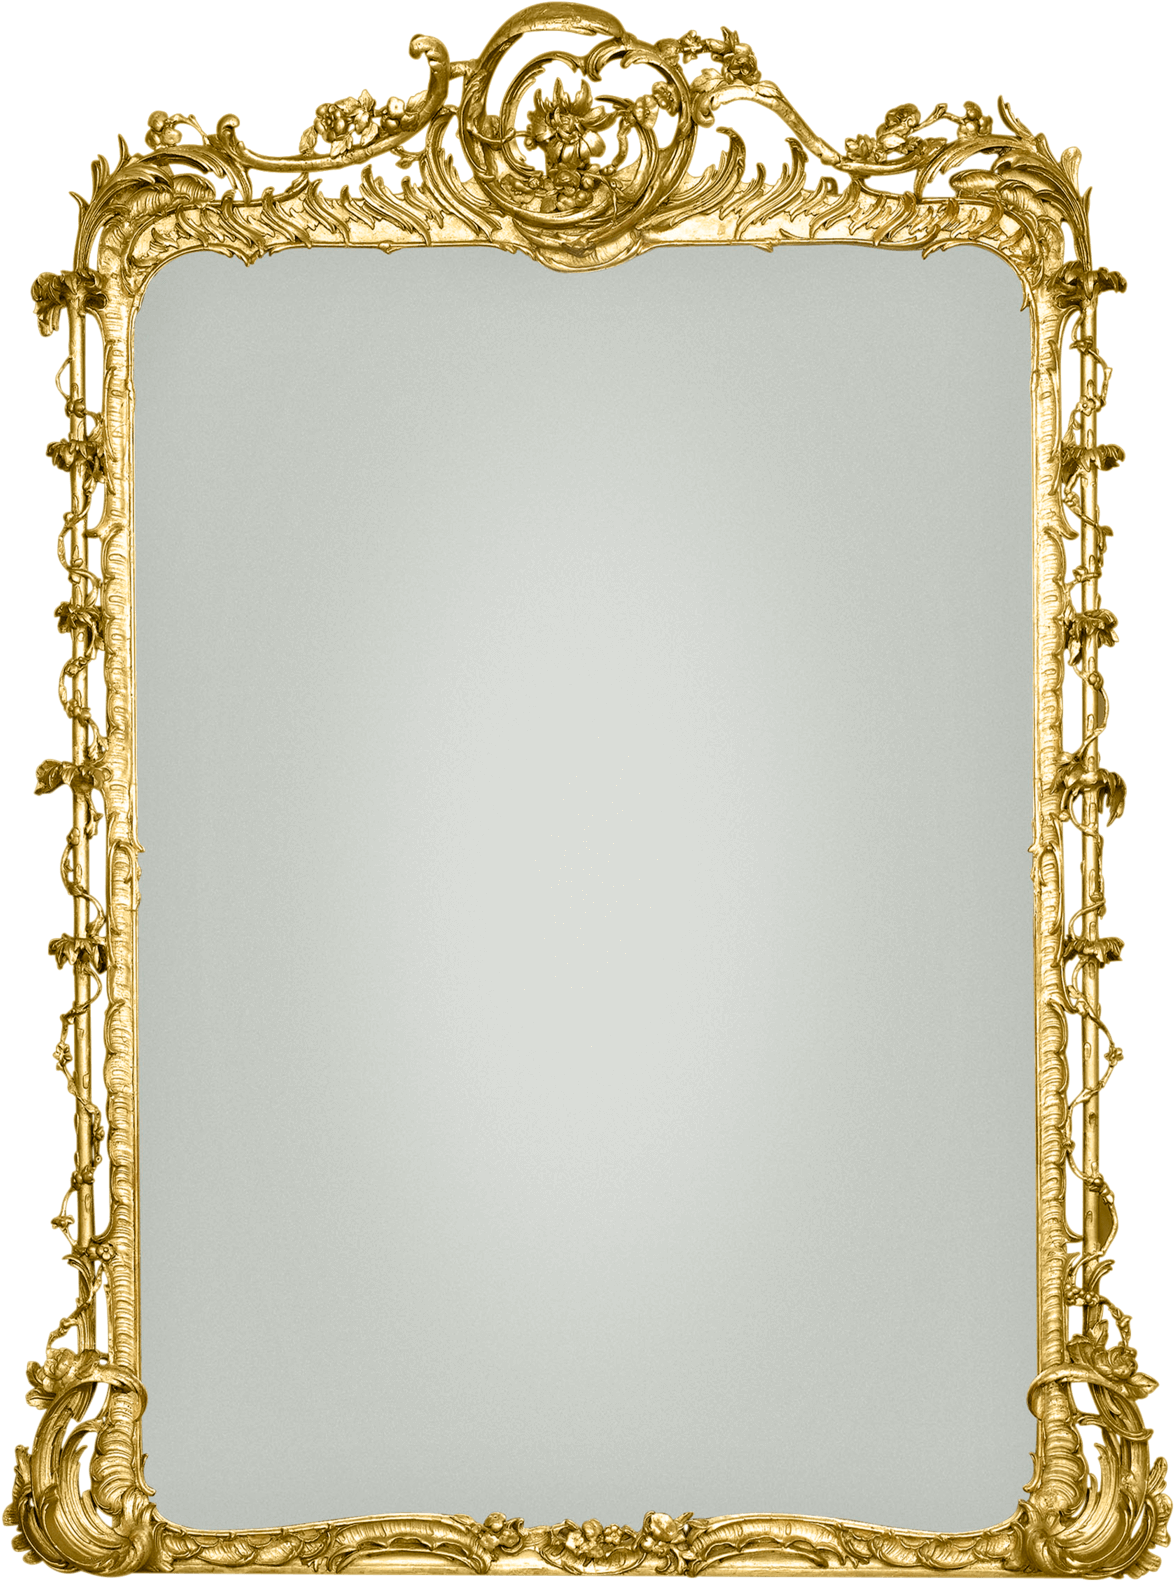 Ornate Golden Antique Mirror Frame PNG